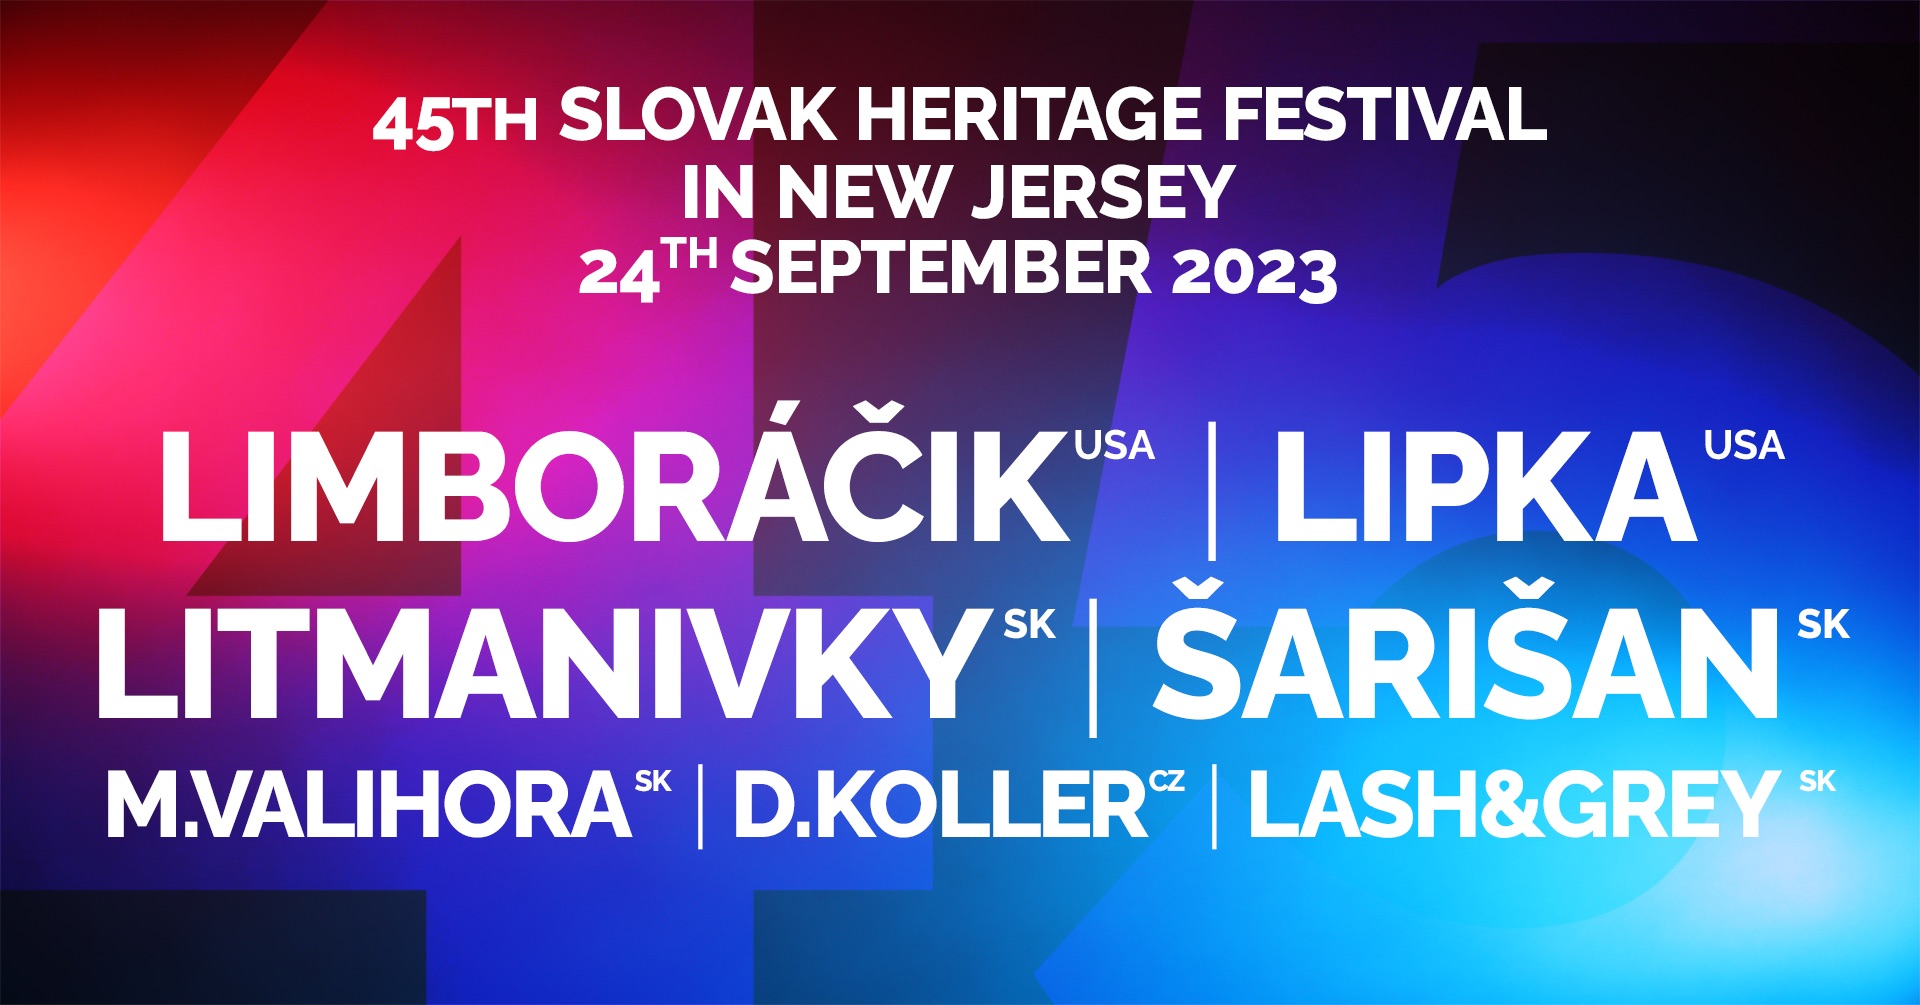 45th Slovak Heritage Festival / Festival slovenskho dedistva 2023 New Jersey